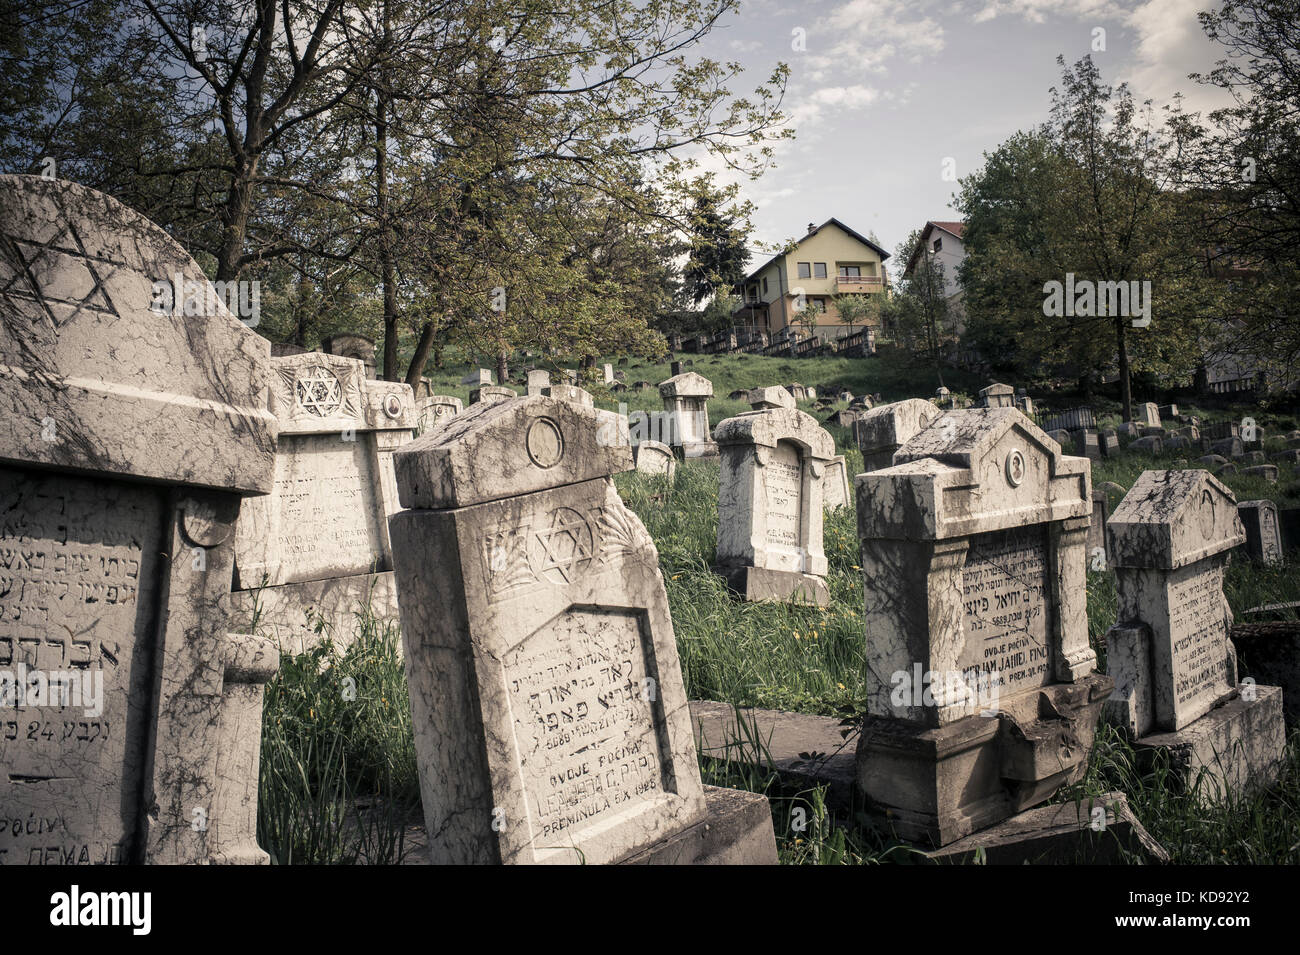 Le cimetière Juif de Sarajevo est l'un des Plus anciens cimetières juif d'Europe. Il est abandonné depuis la fin de la guerre, Sarajevo mai 2015. Il Foto Stock